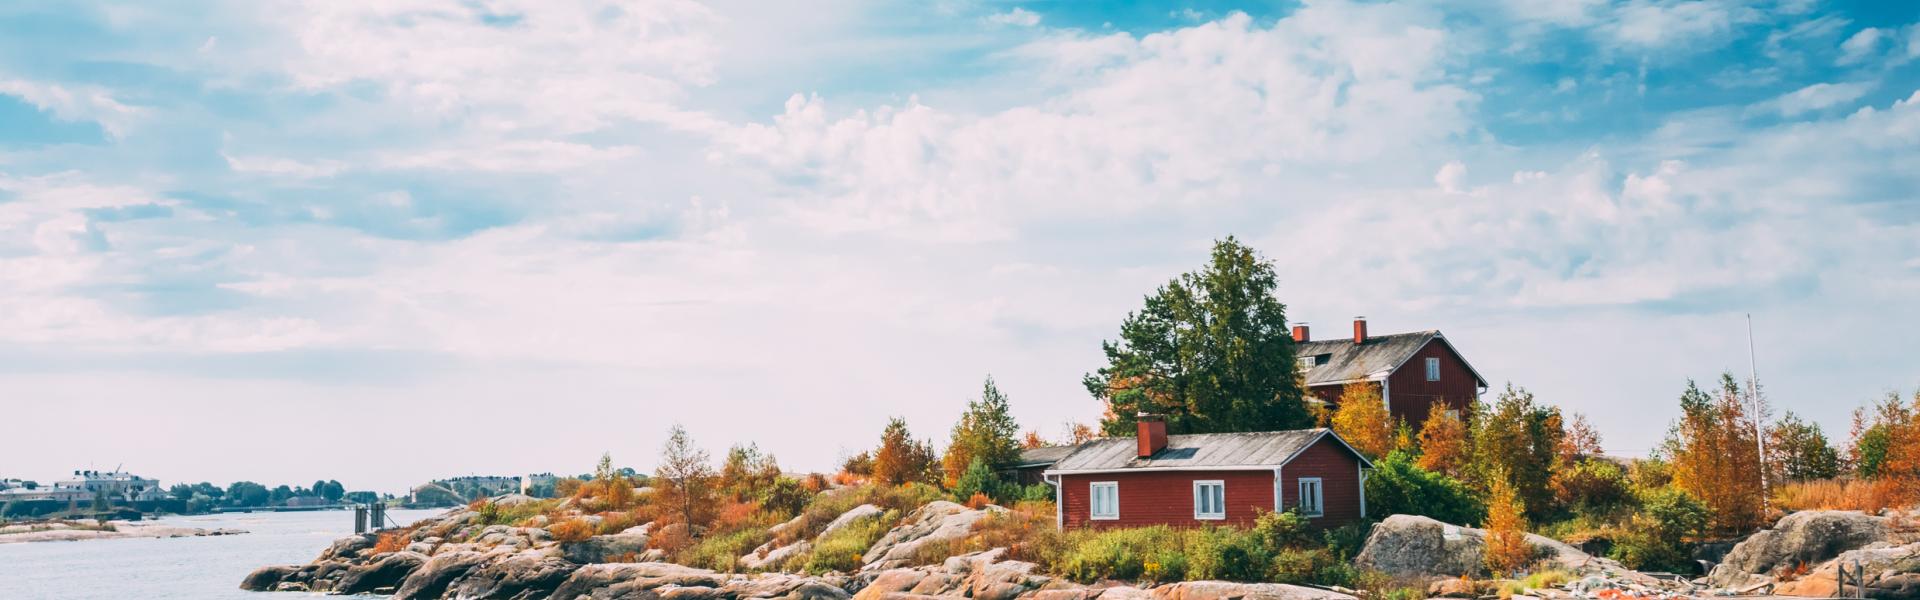 Alojamientos y apartamentos vacacionales en Finlandia - HomeToGo